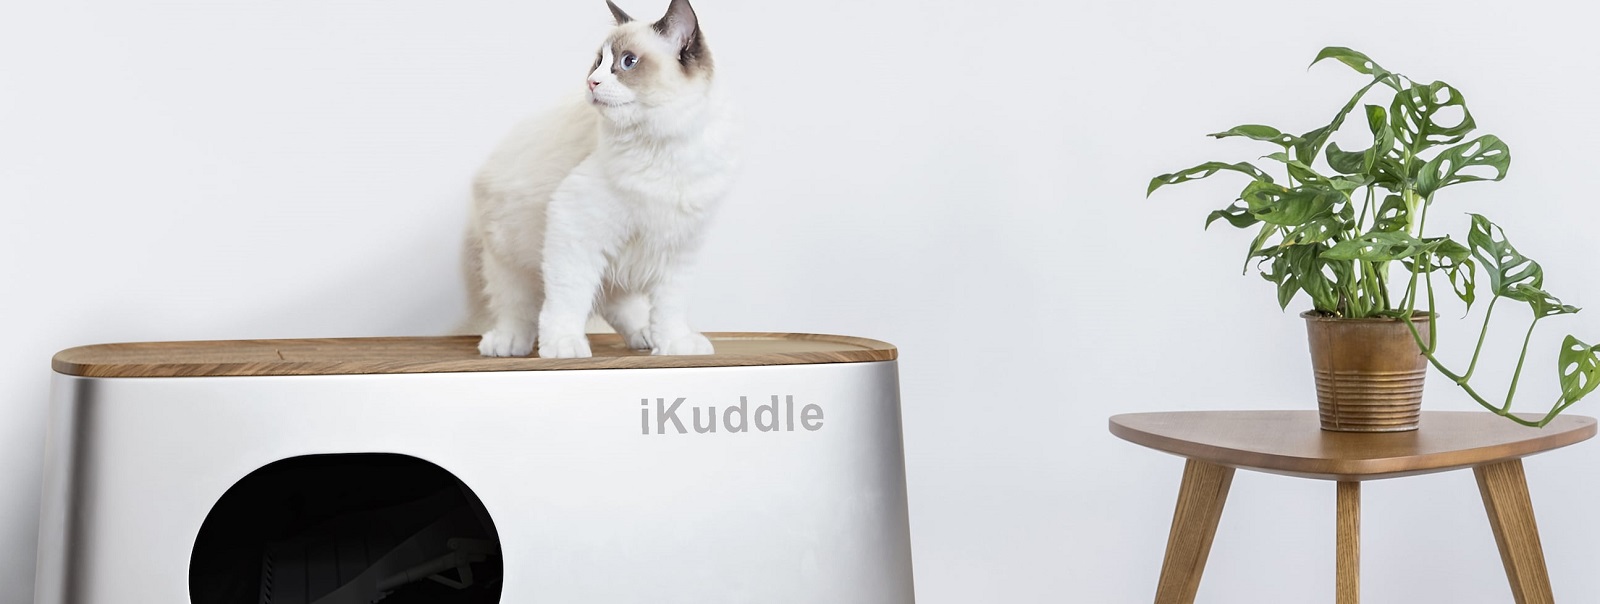 iKuddle Auto-Pack - перший в світі самоочищувальний котячий туалет